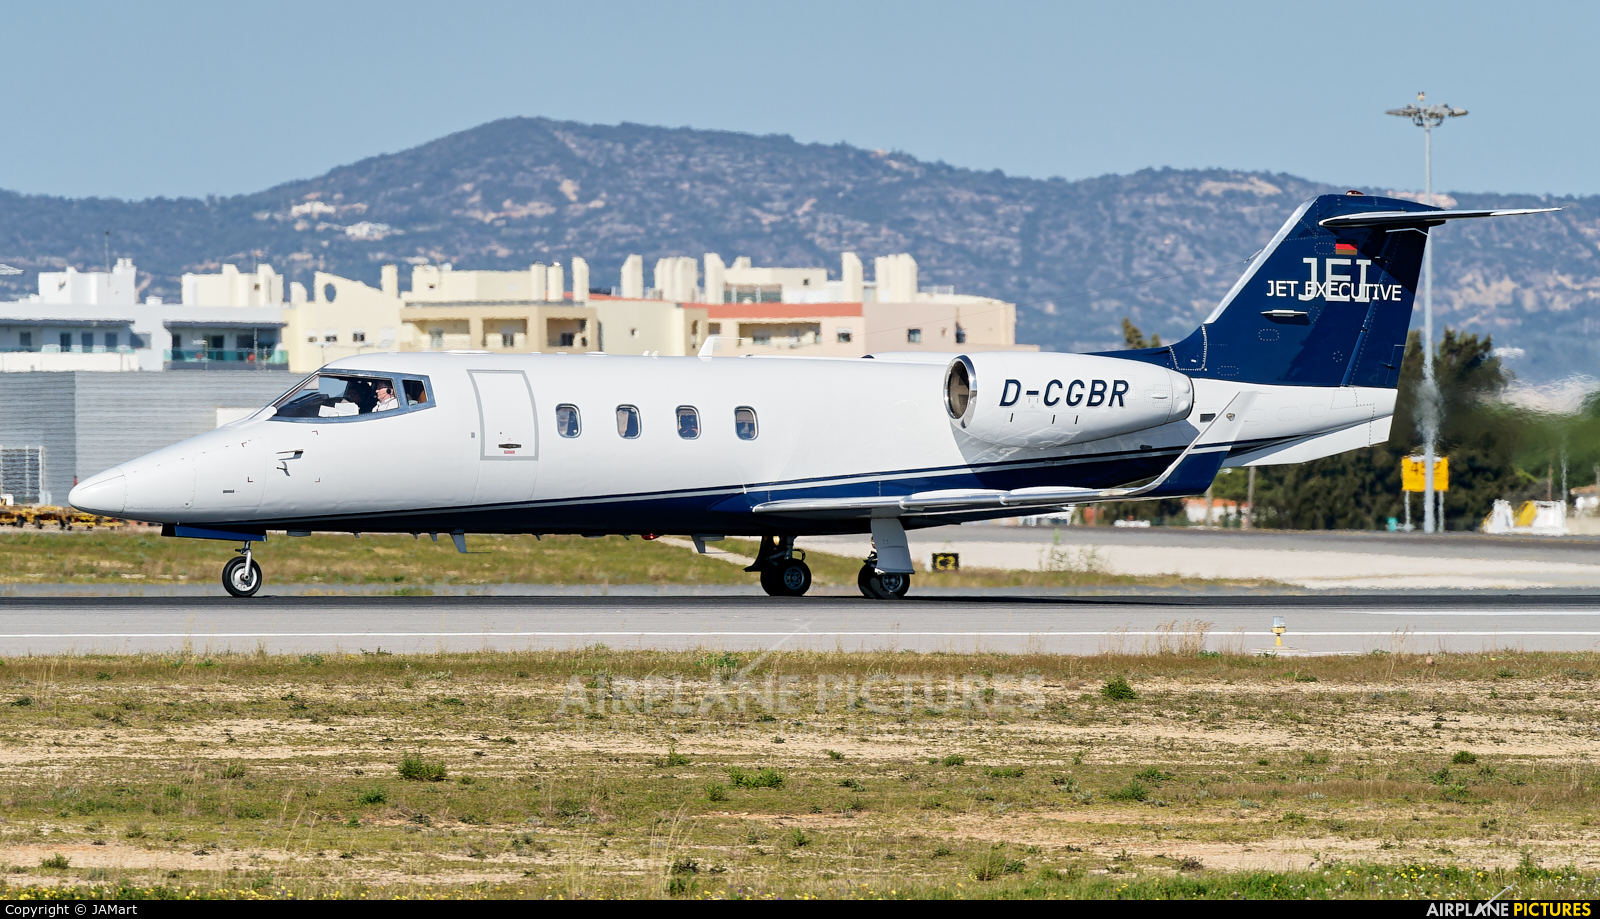 Jet Executive D-CGBR aircraft at Faro